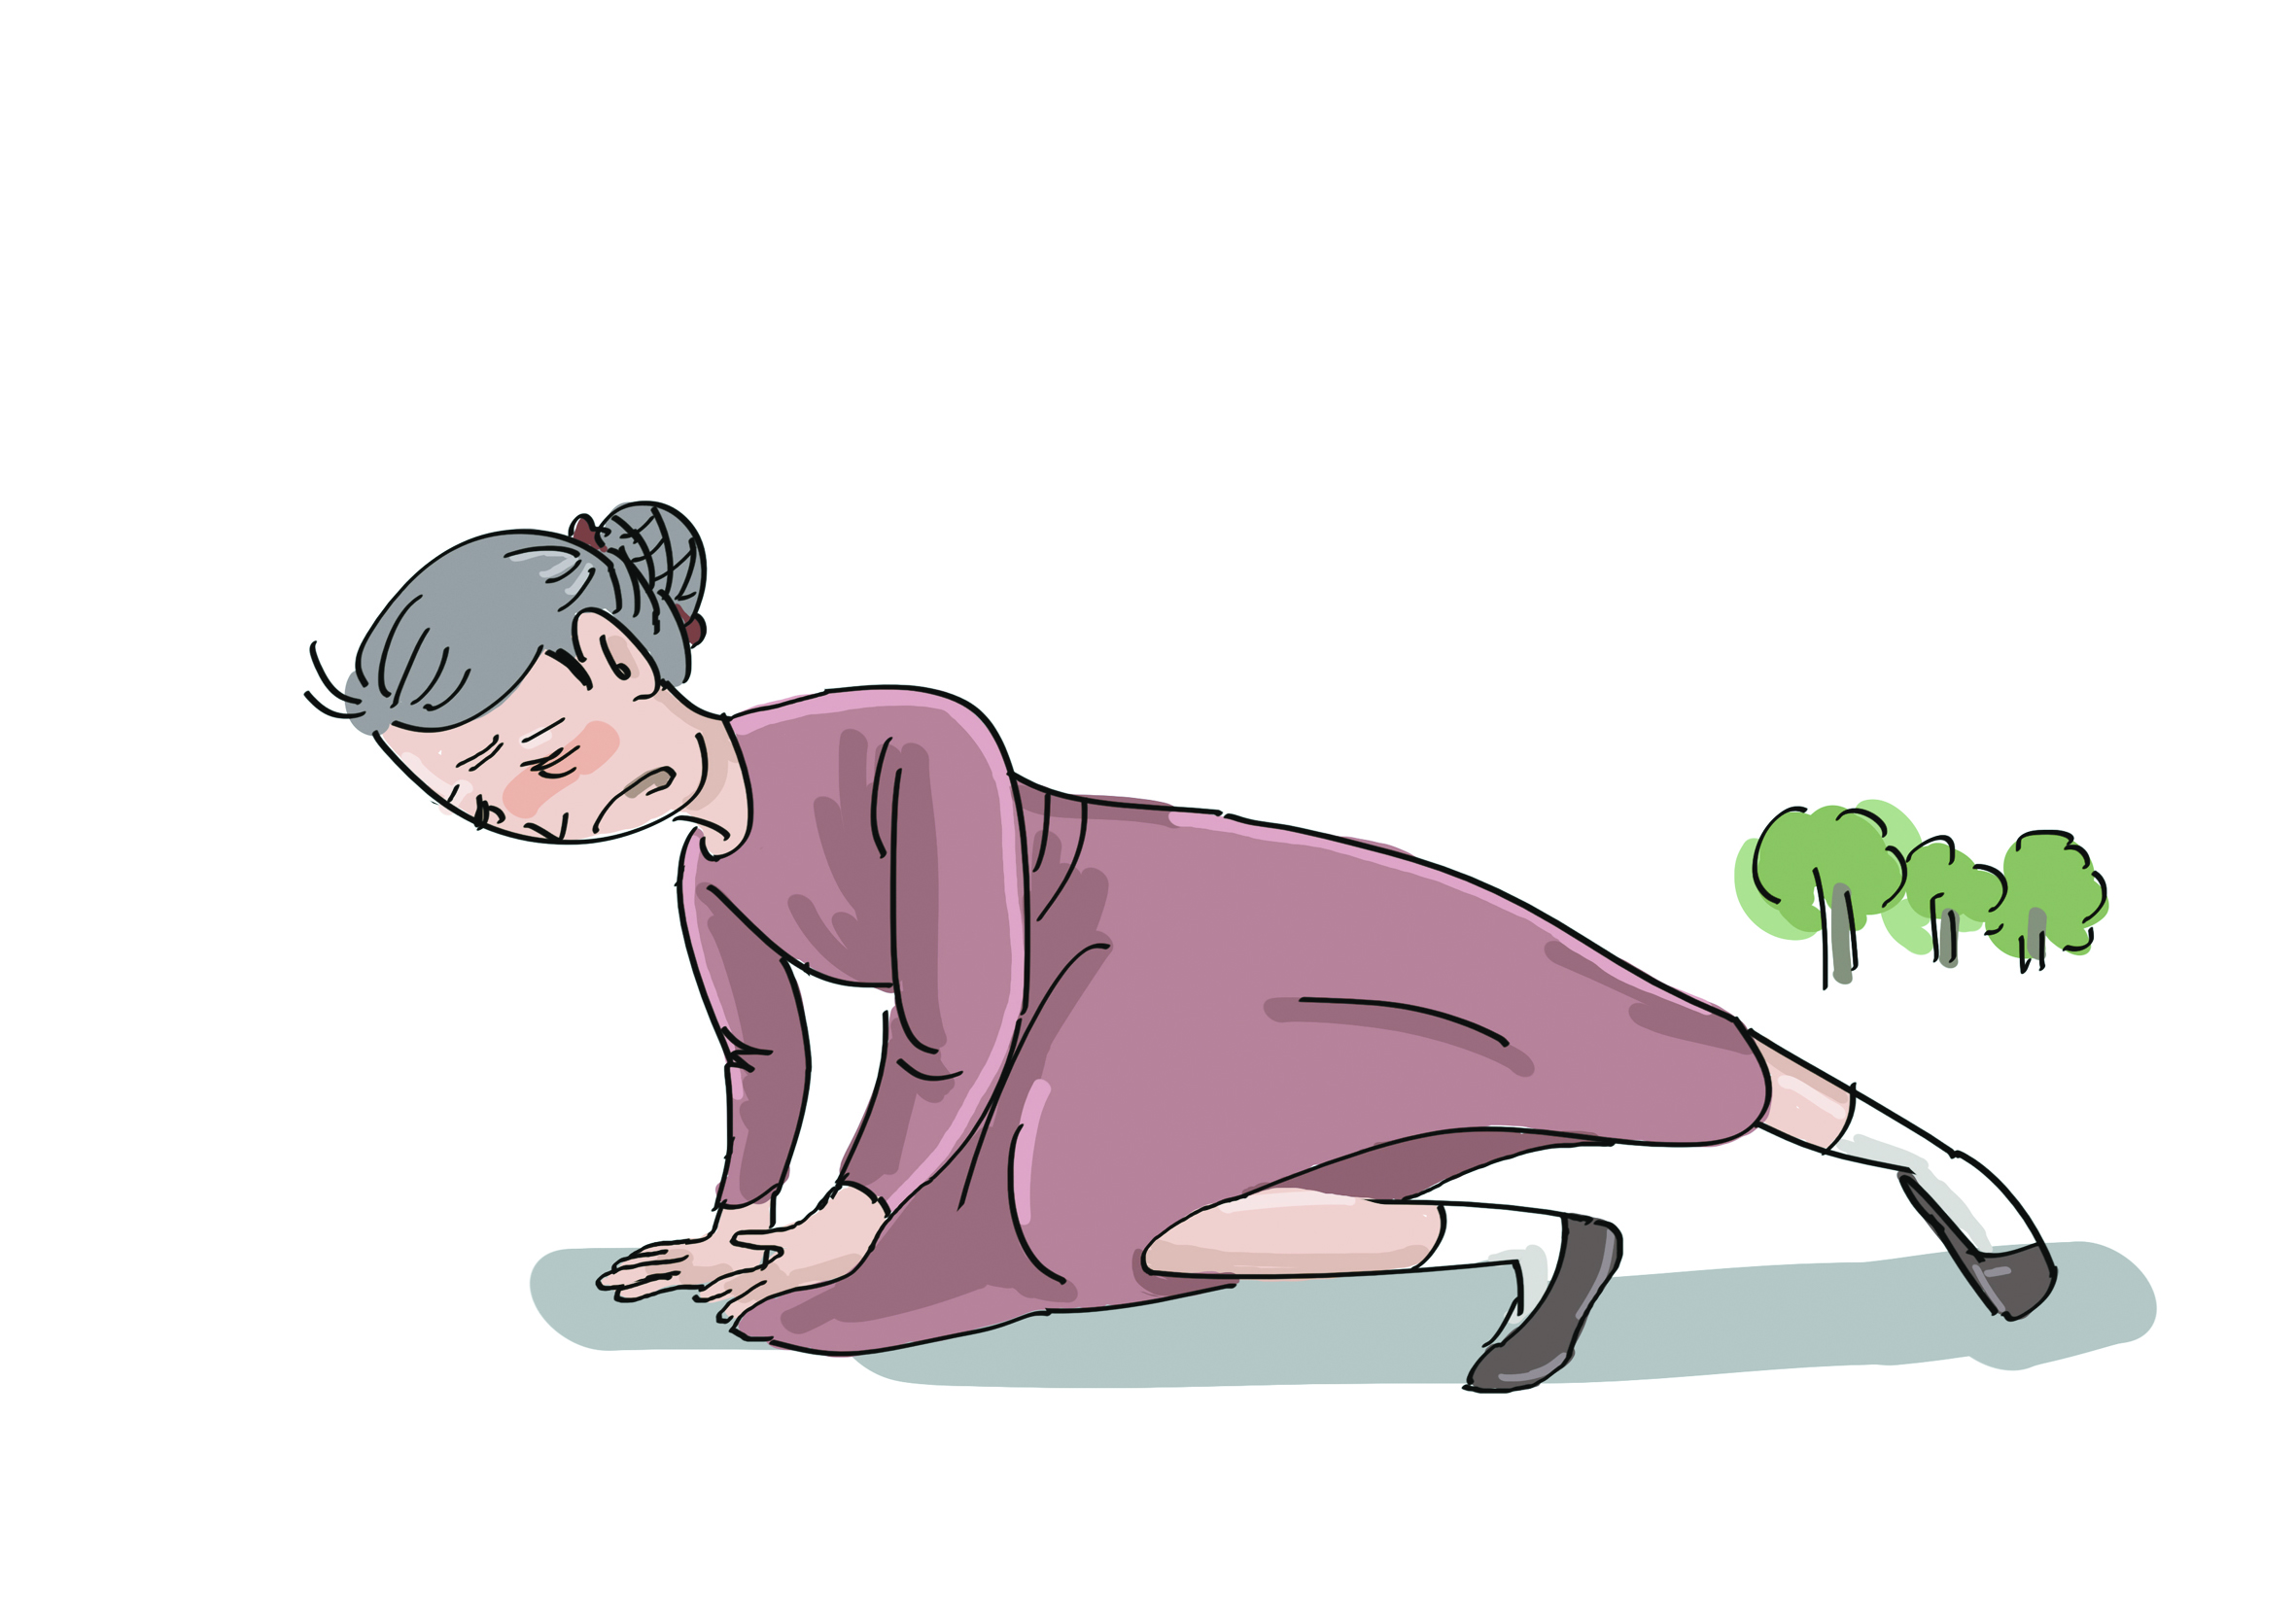 资料图 王金辉 作第一,科学的锻炼有助于降低老年人跌倒和因跌倒导致